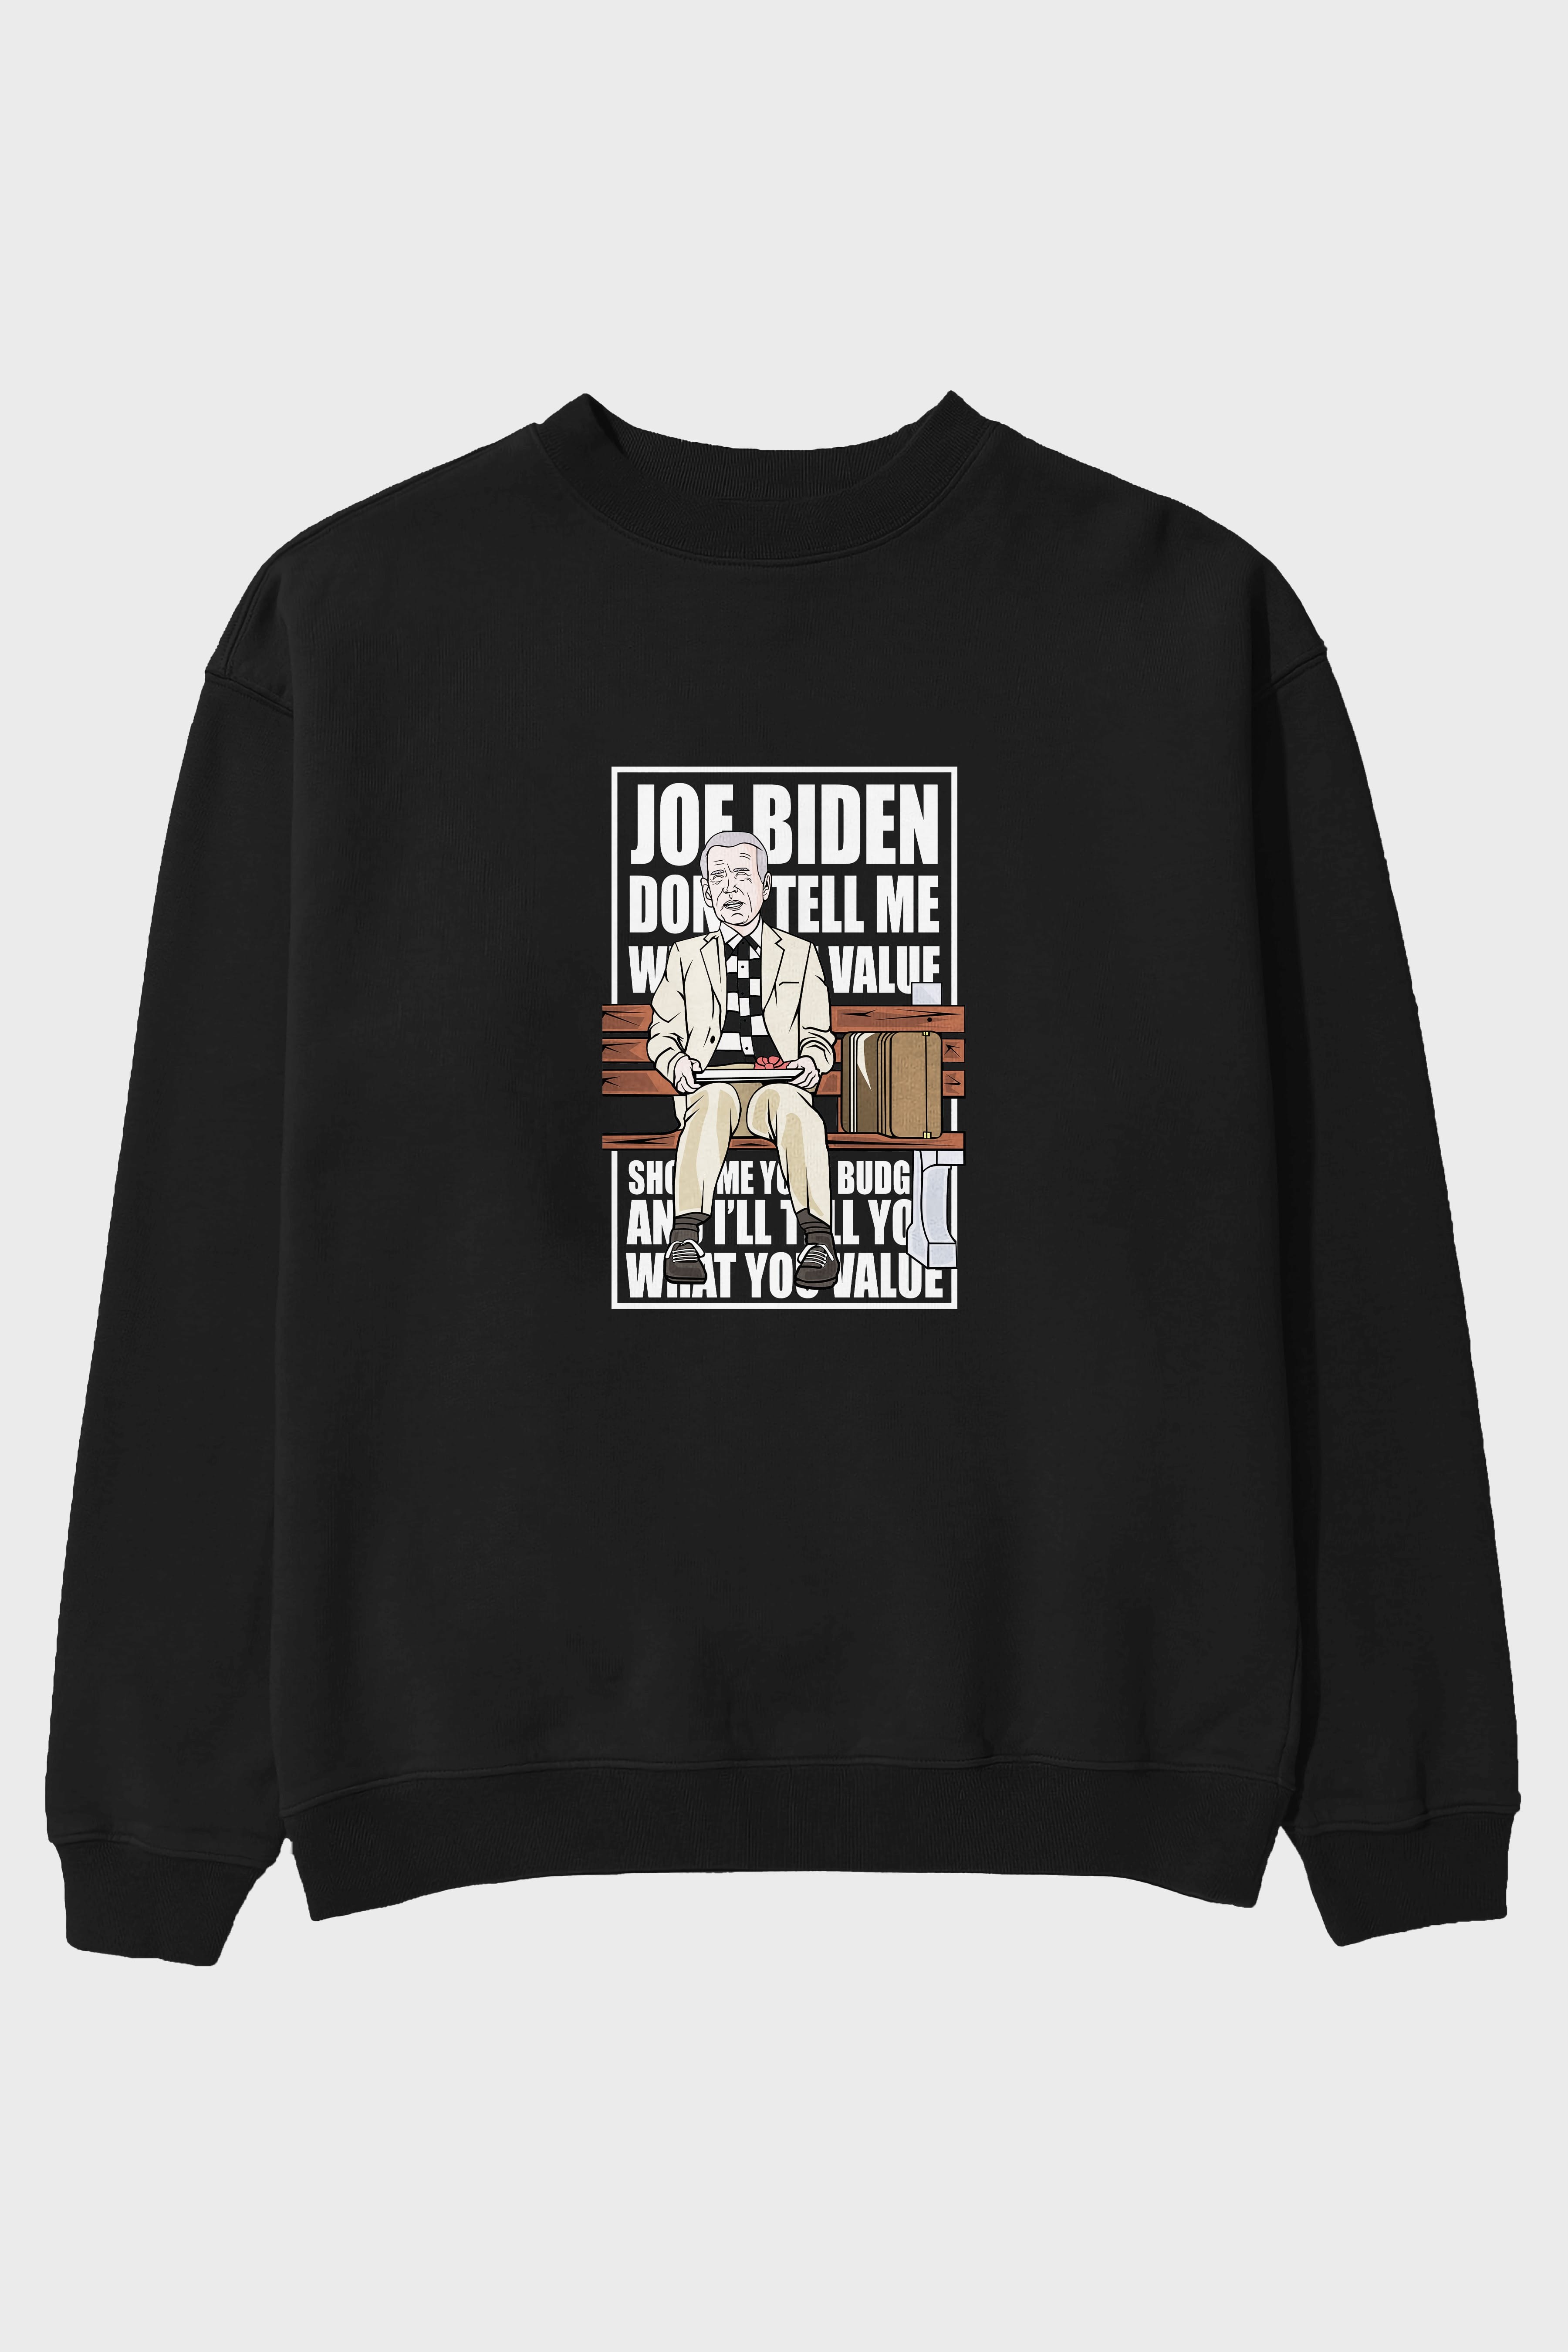 Joe Biden Forest Gump Ön Baskılı Oversize Sweatshirt Erkek Kadın Unisex